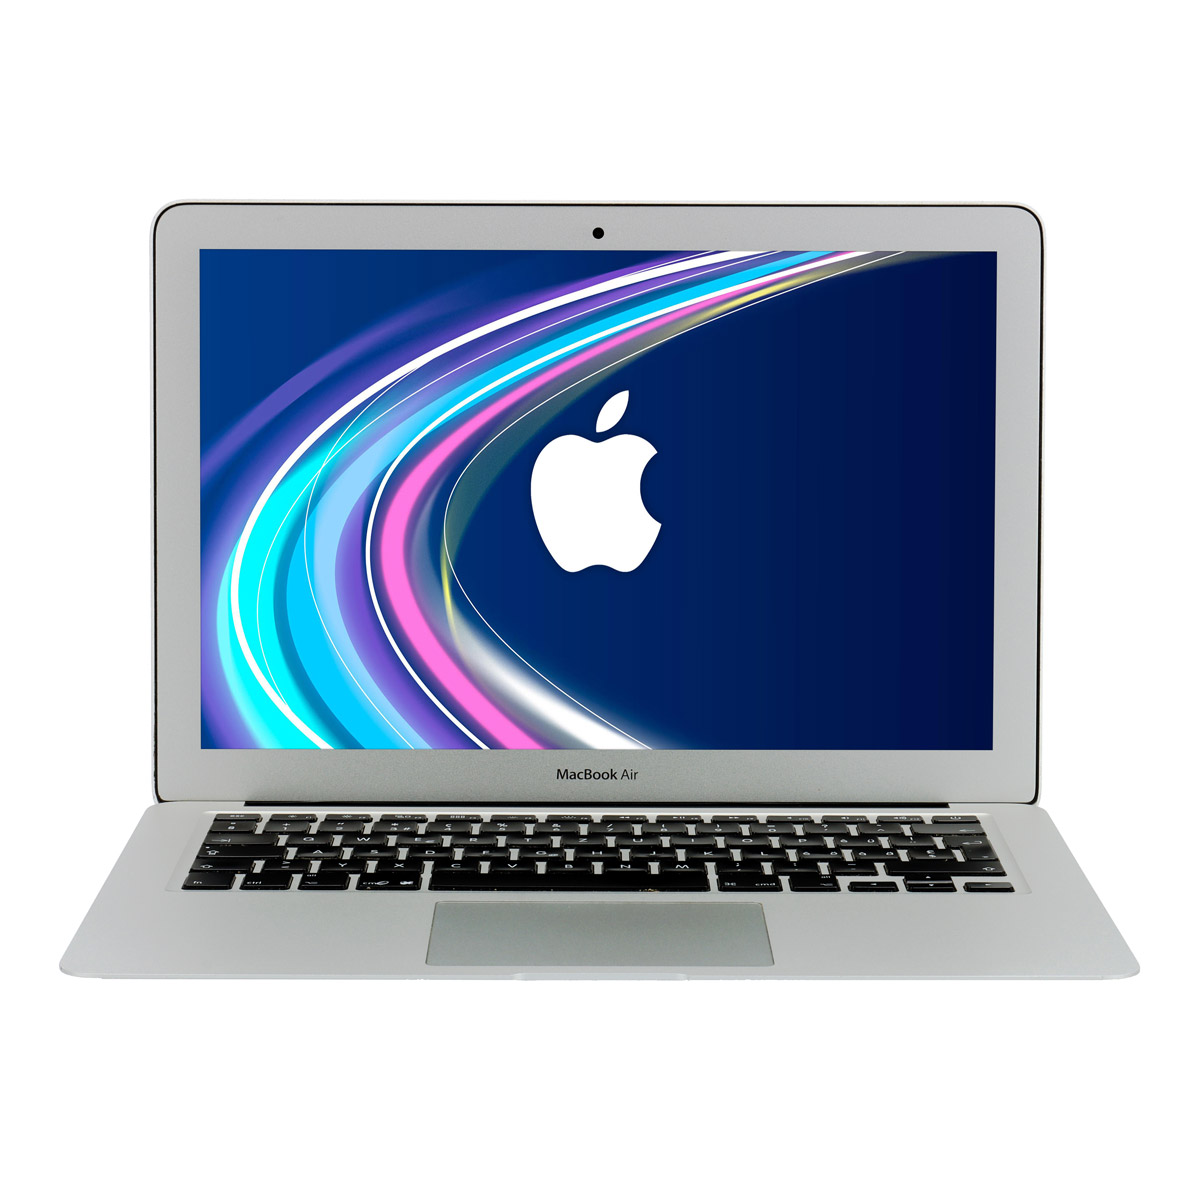 Apple MacBook Air 13' Mid 2013 Core i7 4650U 8 GB 250 GB SSD Webcam B